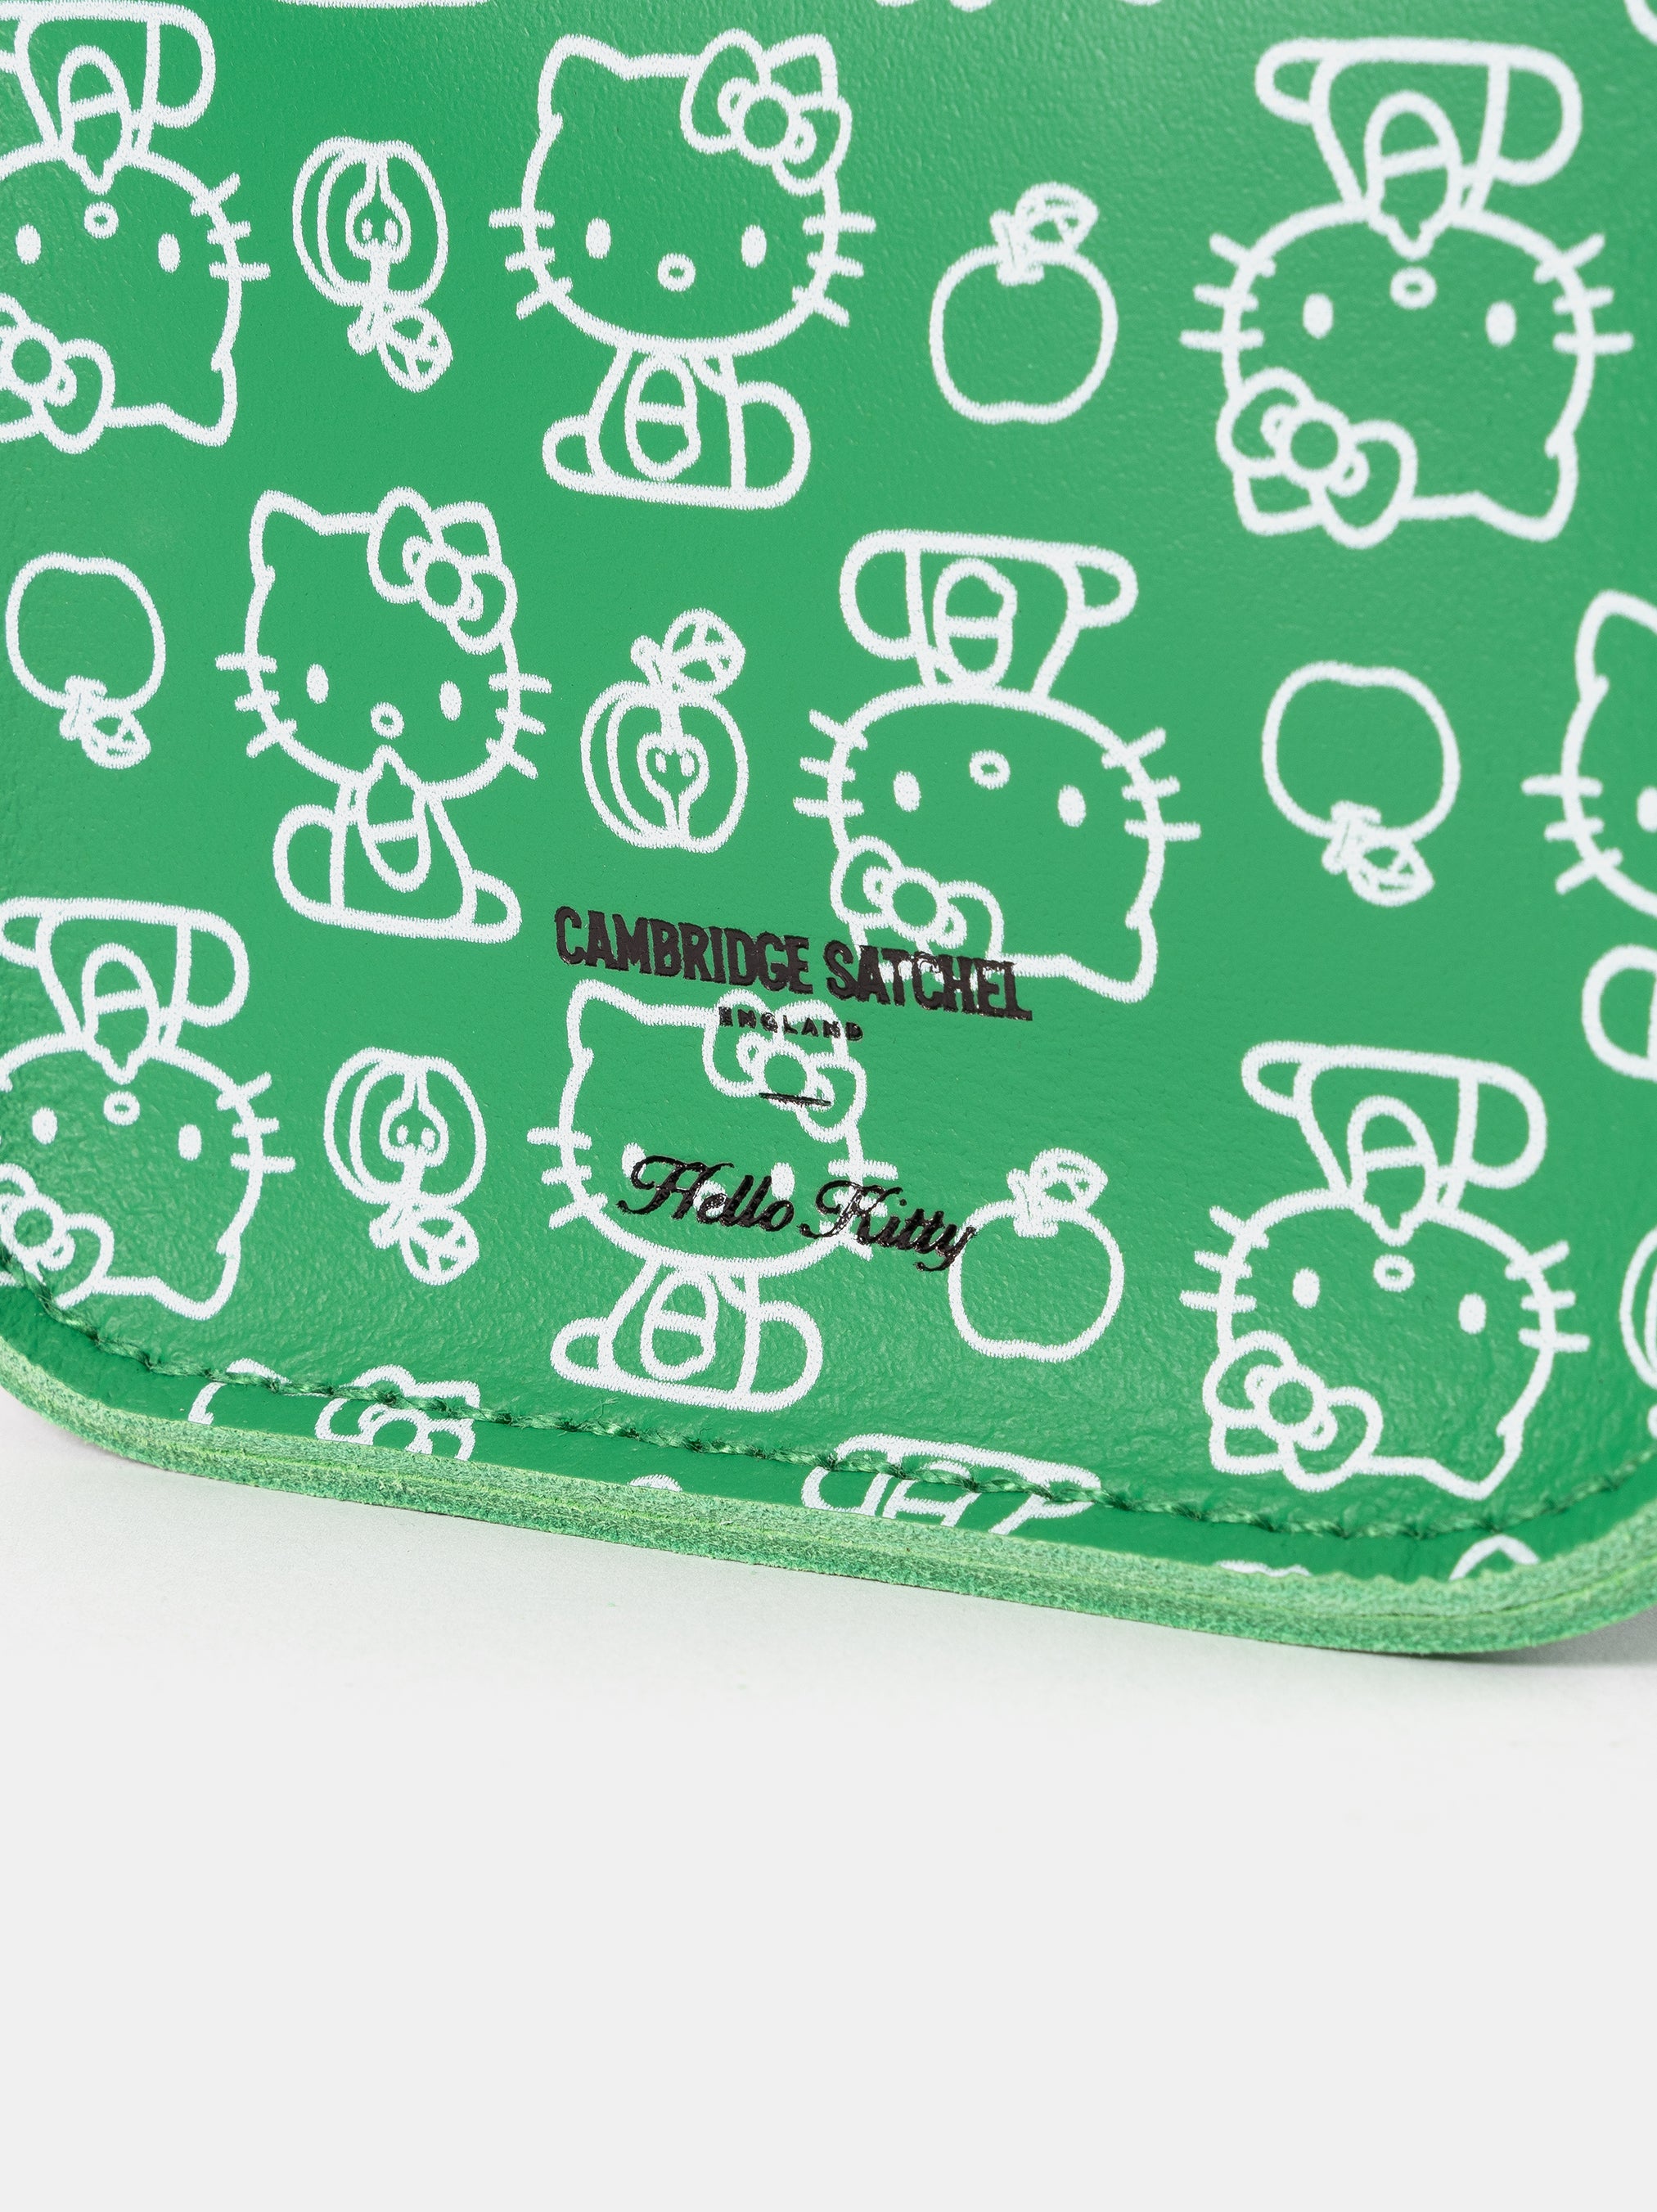 The Hello Kitty Micro Satchel - Apple Green